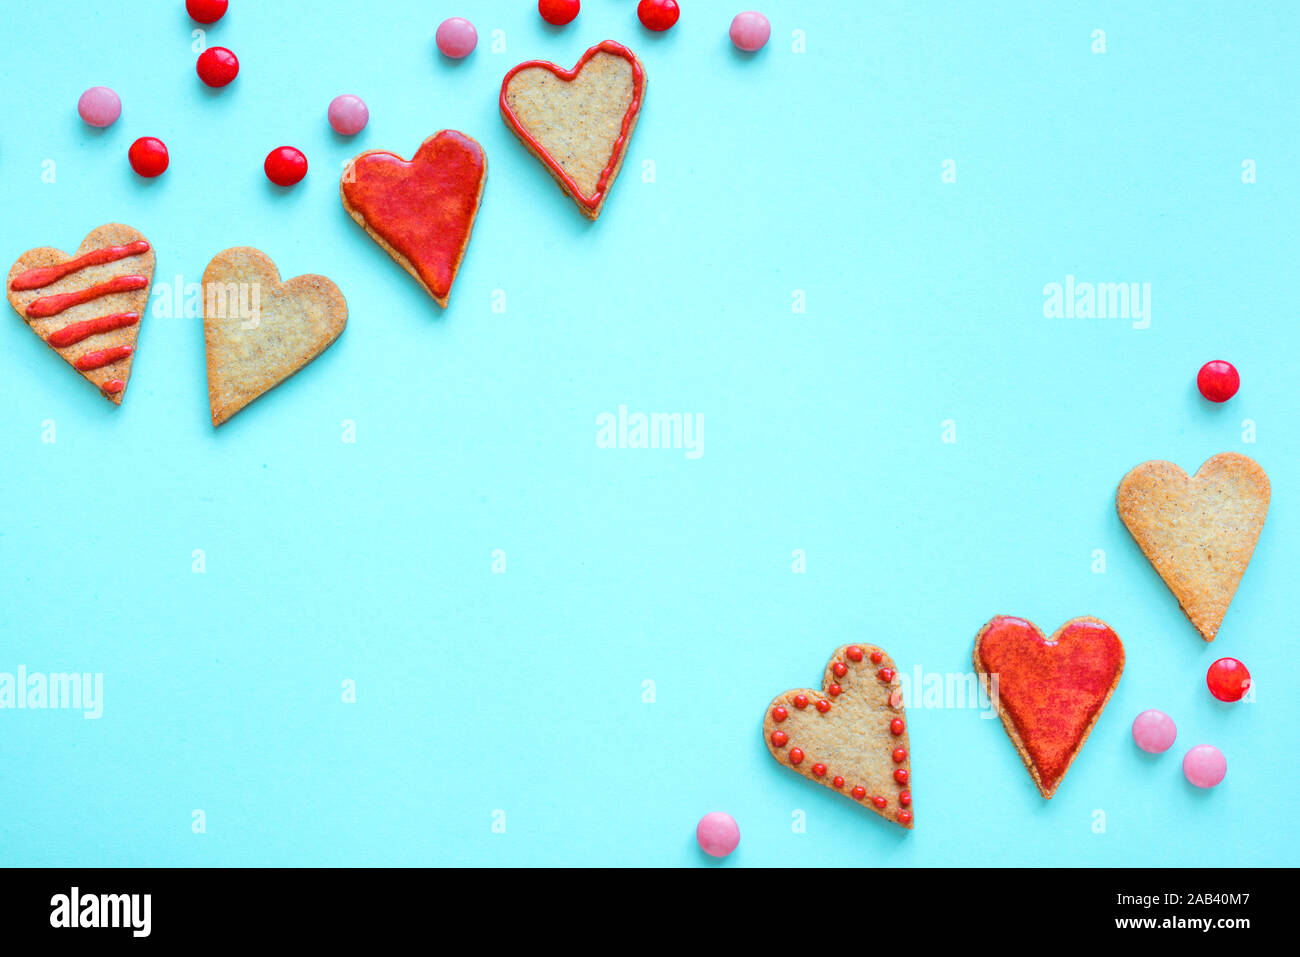 Hình ảnh nền Valentine với đồ ngọt hình trái tim trên nền màu xanh sẽ khiến bạn muốn ngất ngây vì độ dễ thương và ngọt ngào của nó. Điều đó chắc chắn sẽ làm bạn có cảm giác mong muốn ăn các món đồ ngọt, thưởng thức những hương vị tuyệt vời.